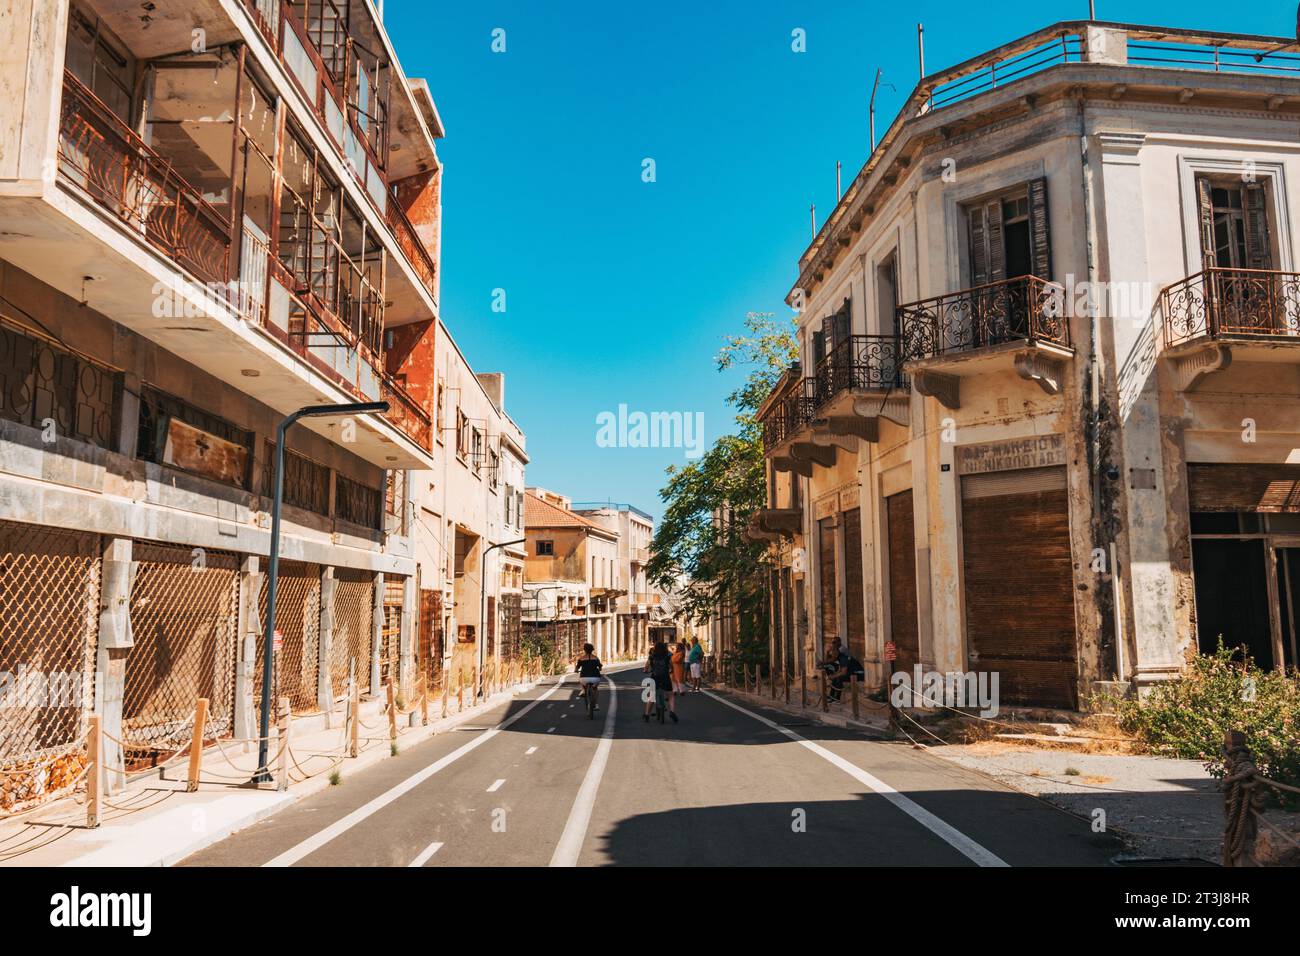 Strada appena pavimentata nella città fantasma di Varosha, Cipro del Nord, che ha aperto ai turisti nel 2020 dopo essere stata chiusa al pubblico per oltre 40 anni Foto Stock